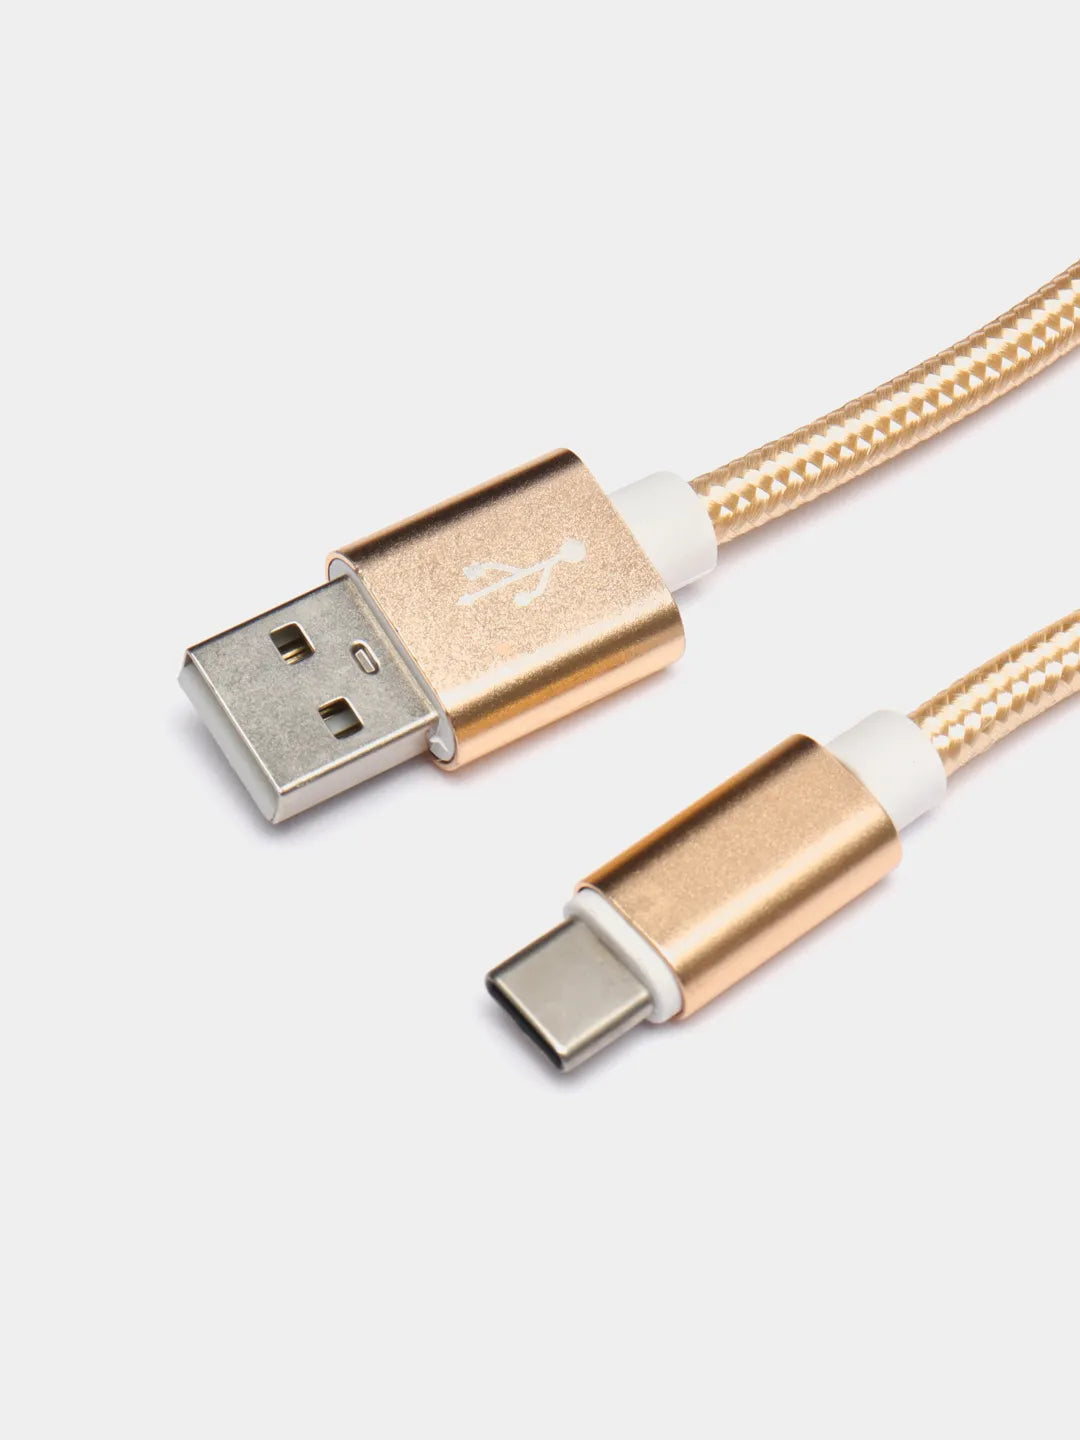 USB-C Ladekabel 2 Meter Lang in Gold für Android Geräte